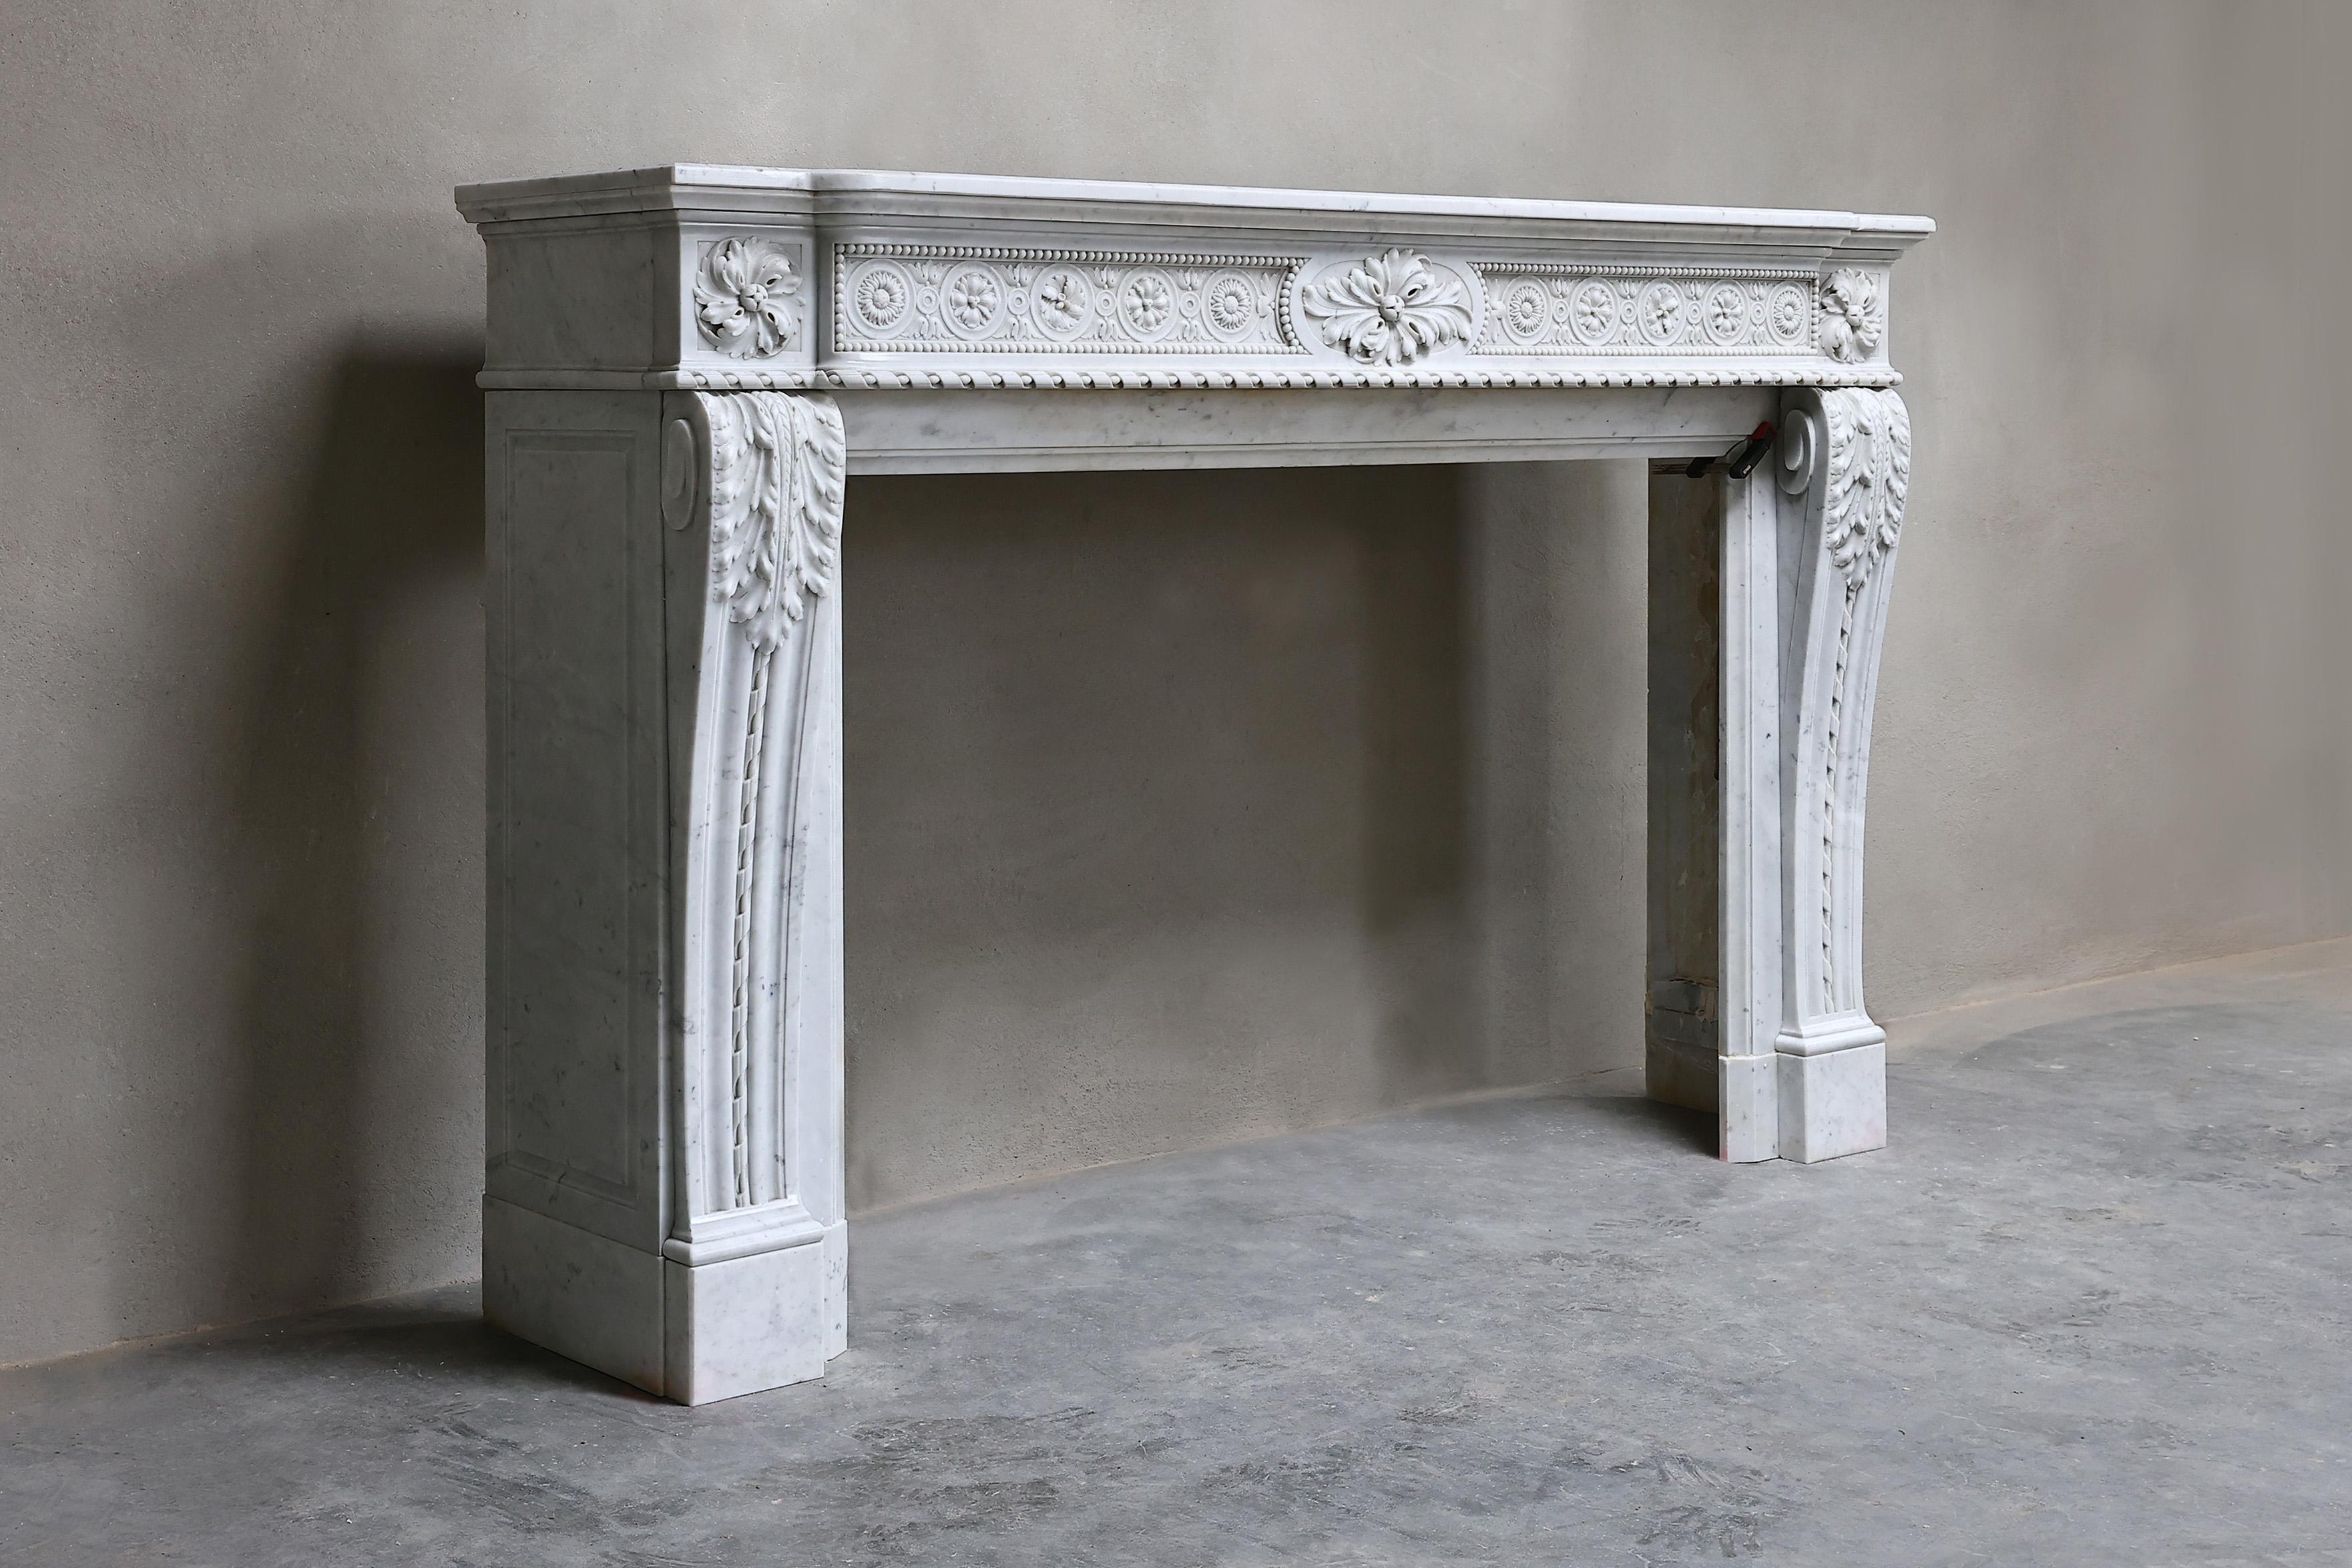 Sehr exklusiver Kaminsims aus Carrara-Marmor aus Italien! Ein wunderschön dekorierter Kamin im Stil von Louis XVI mit verschiedenen Ornamenten im vorderen Teil des Kamins und auf den Beinen! Dieser Kamin aus dem 19. Jahrhundert ist schick und hat